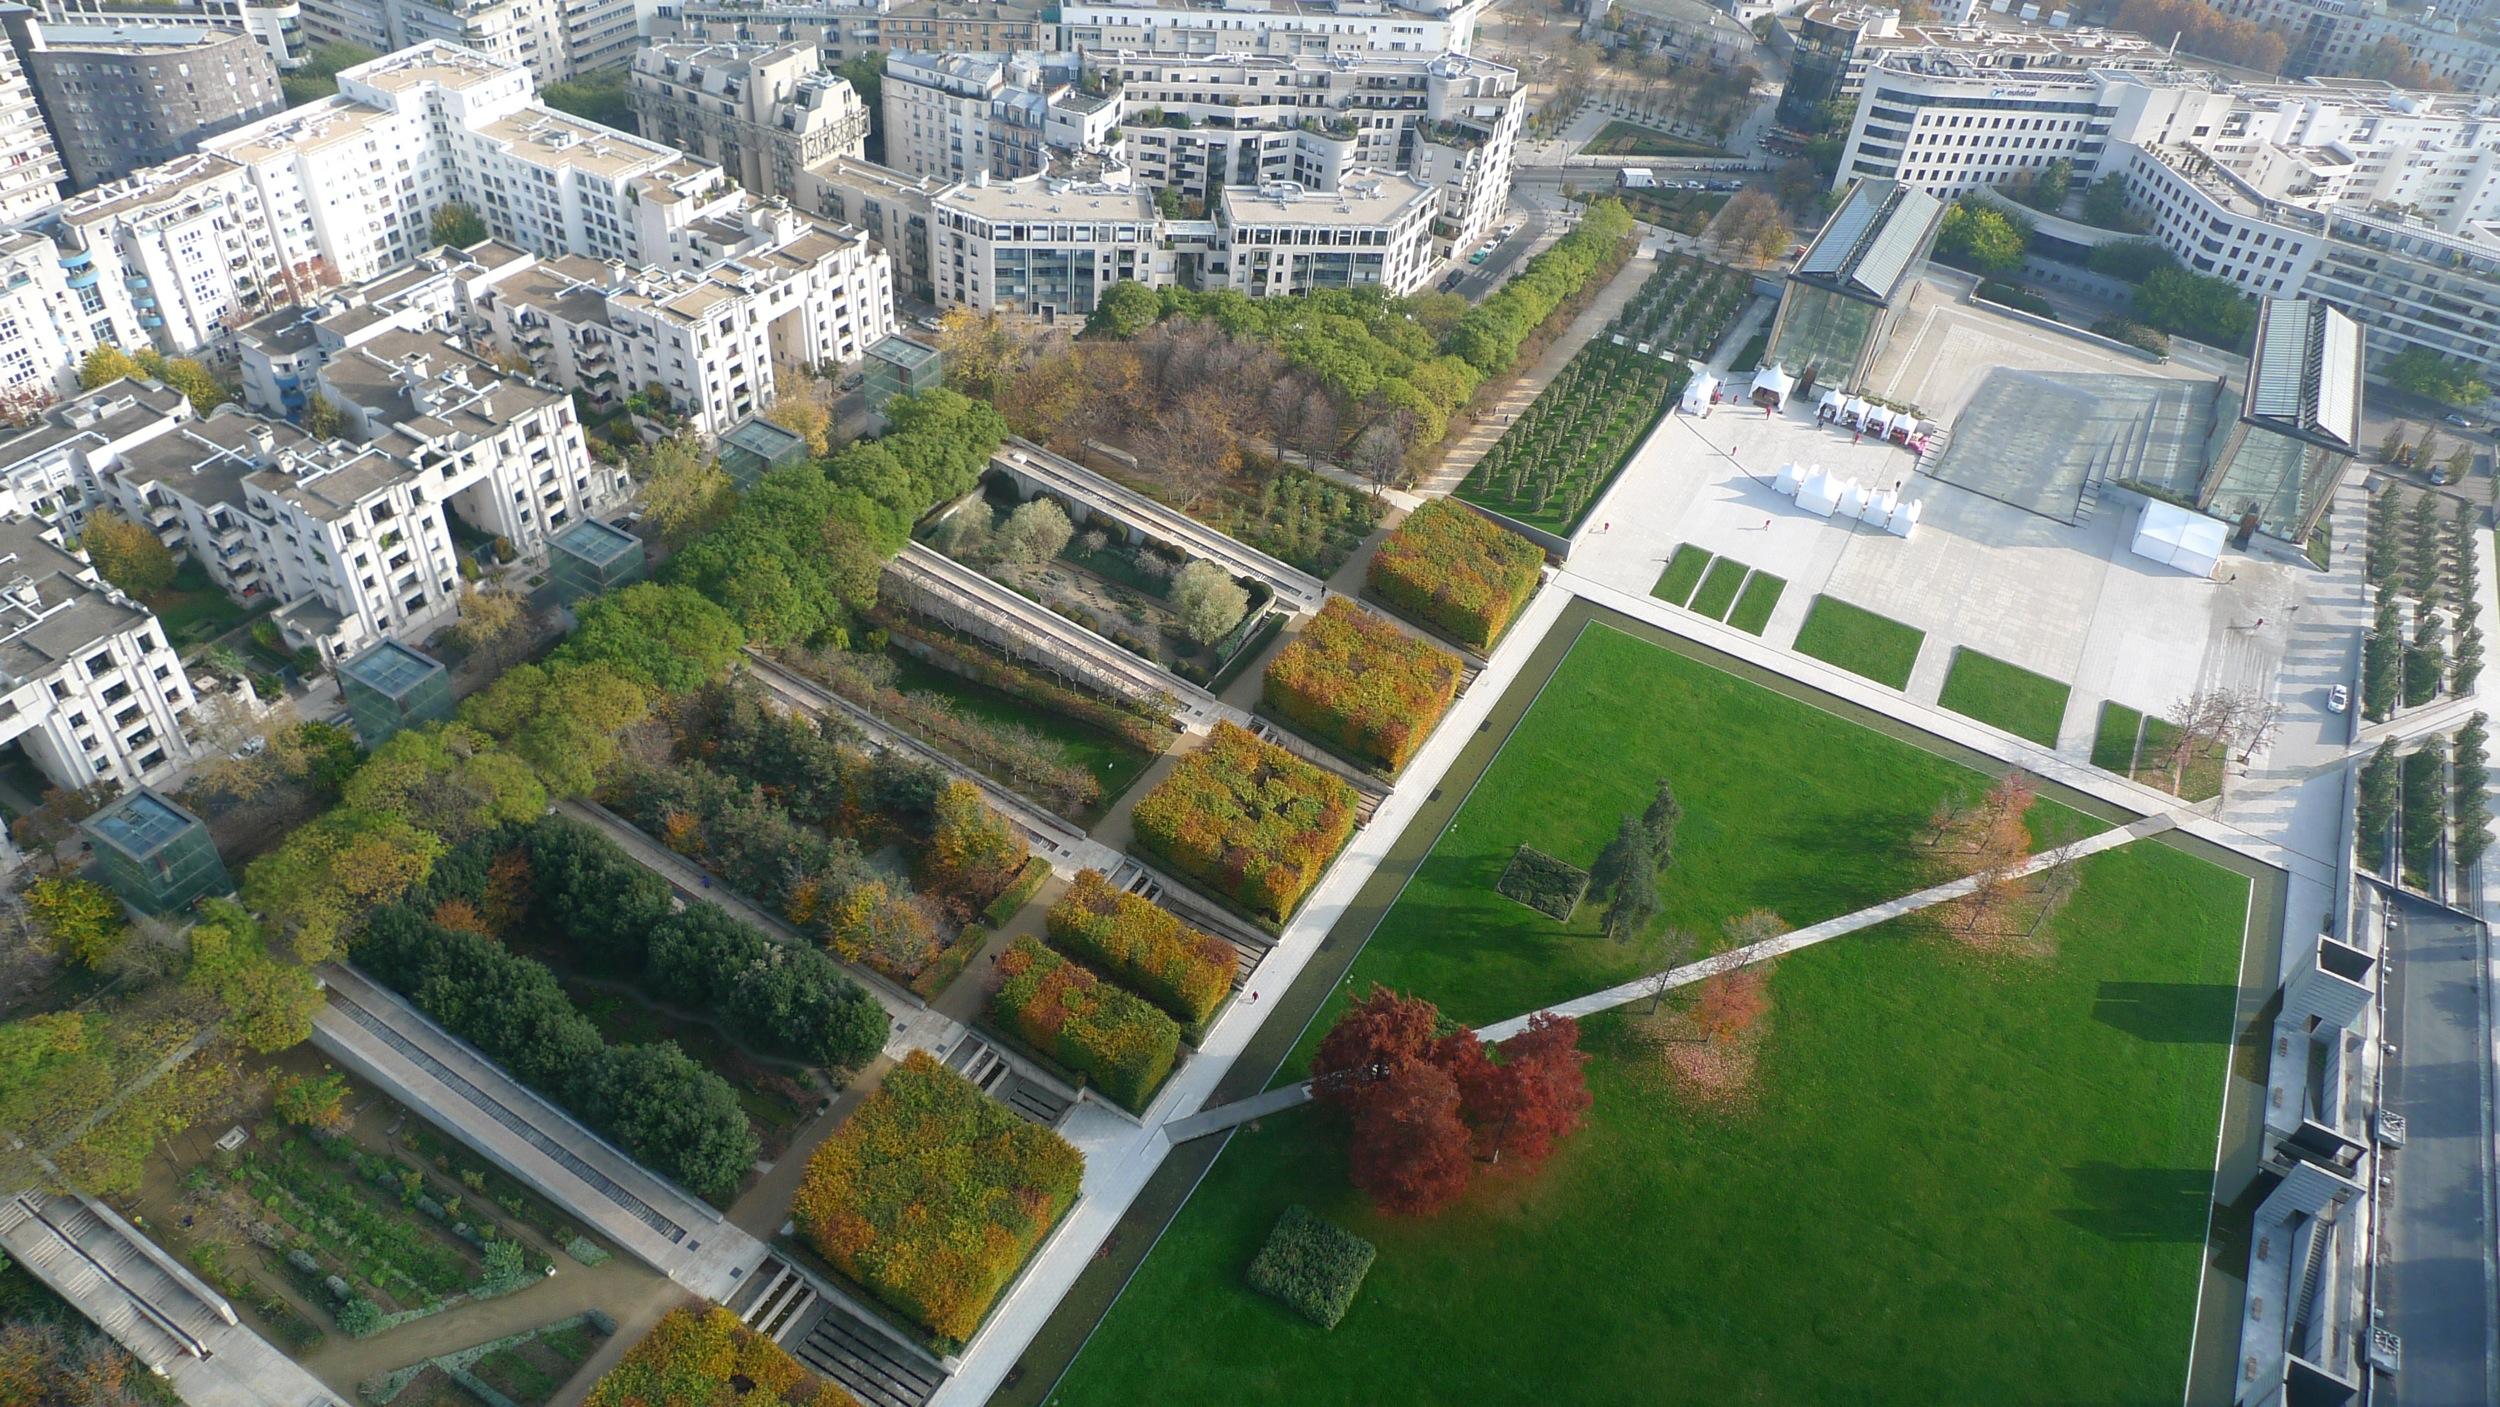 Parc André Citroën; admire Paris from above